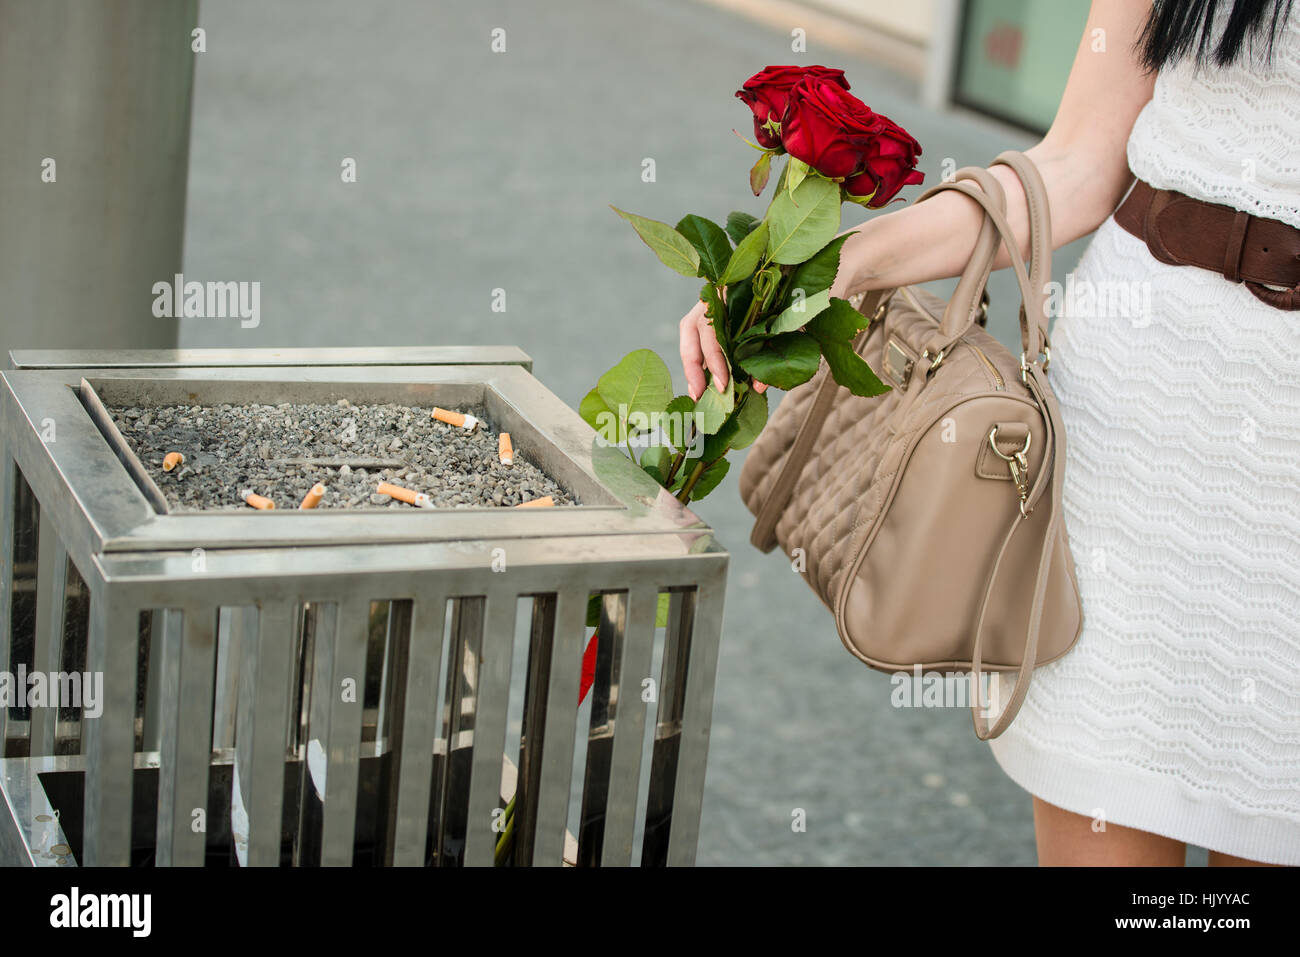 Blume, Blumen, Pflanzen, Rosen, Papierkorb, werfen, Wurf, bin, Liebe,  verliebt Stockfotografie - Alamy